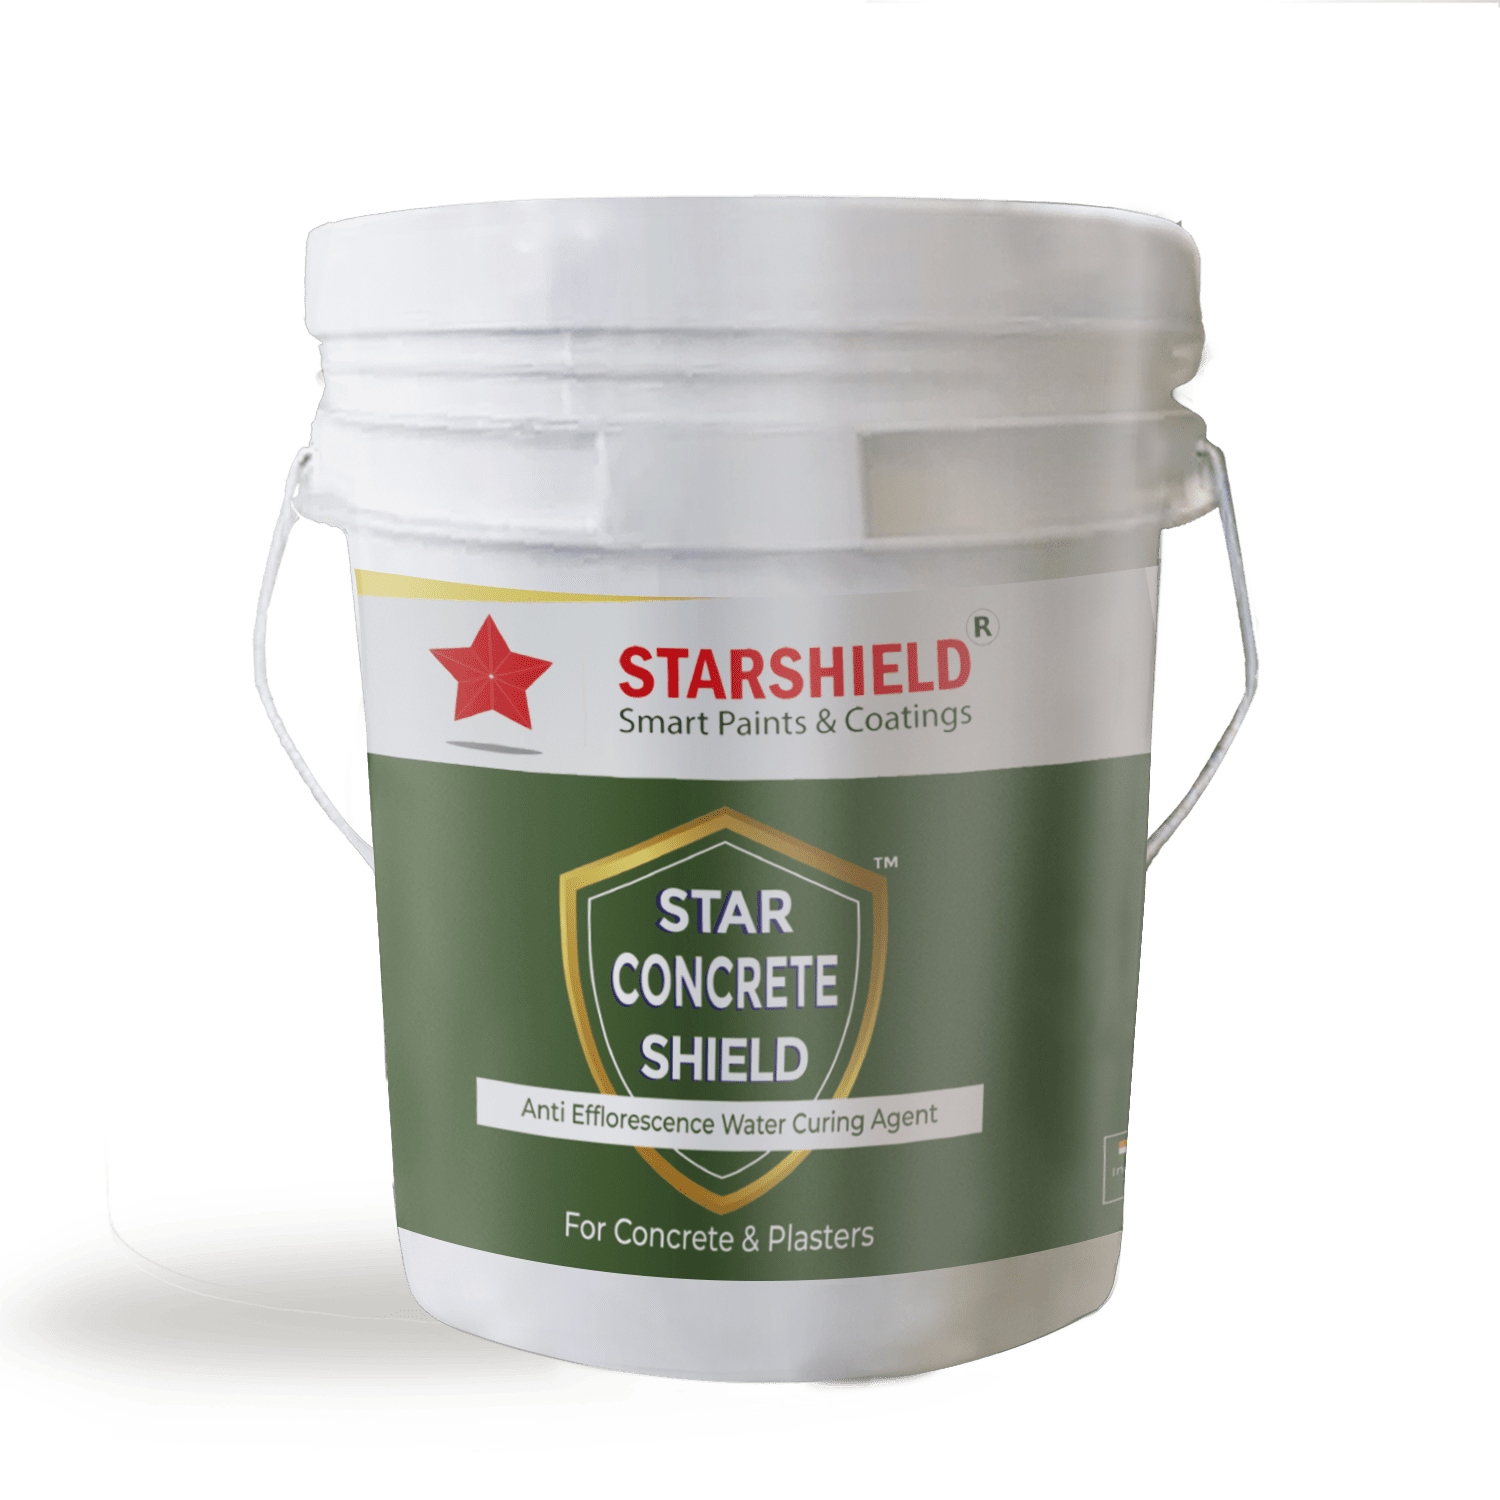 Star Concrete shield